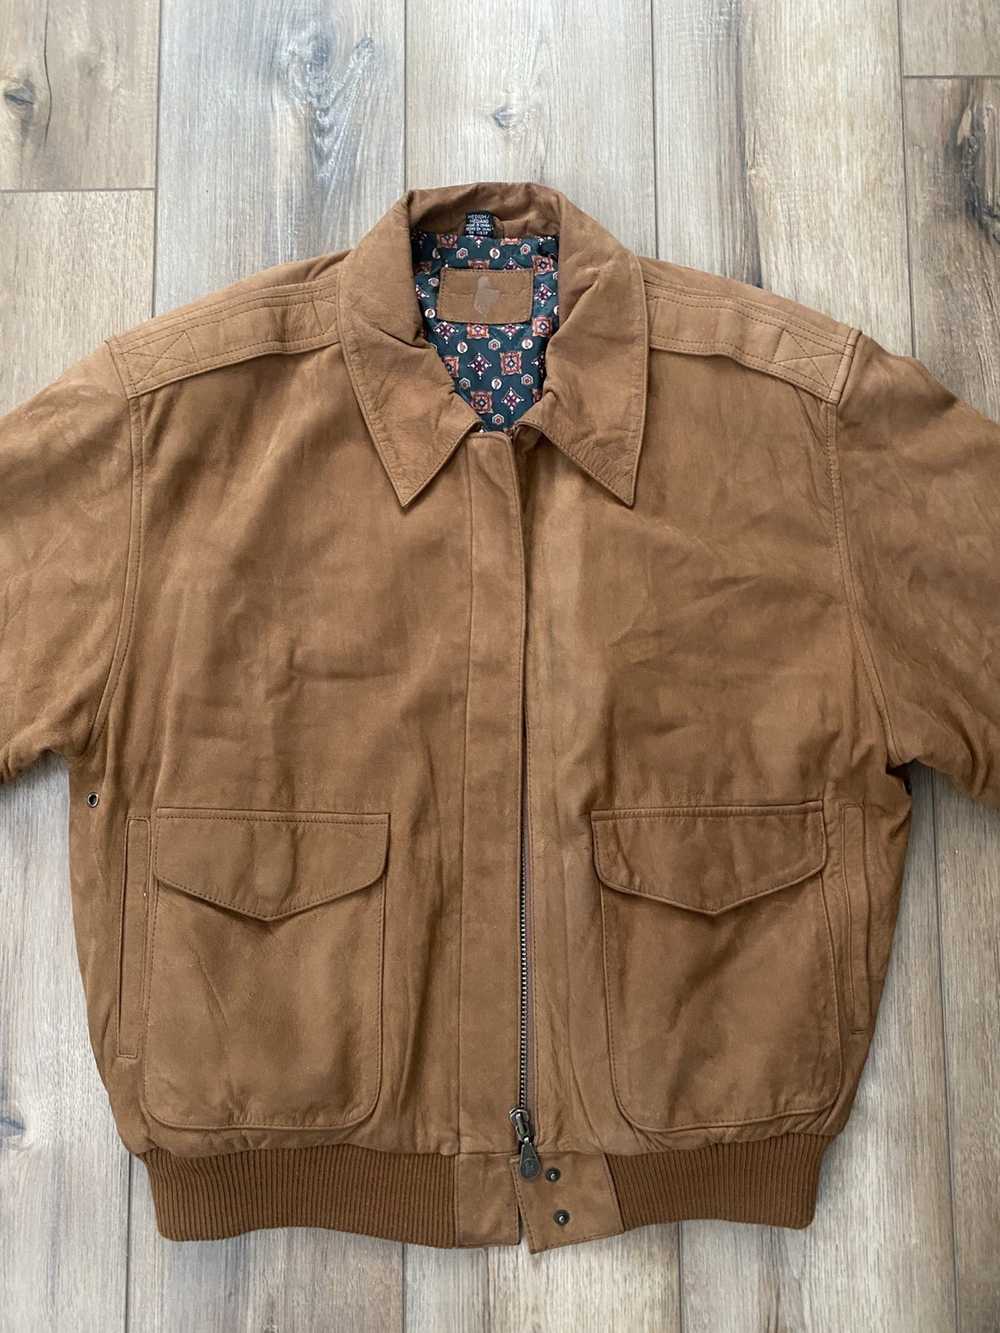 Hunt Club × Leather Jacket × Vintage Vintage sued… - image 2